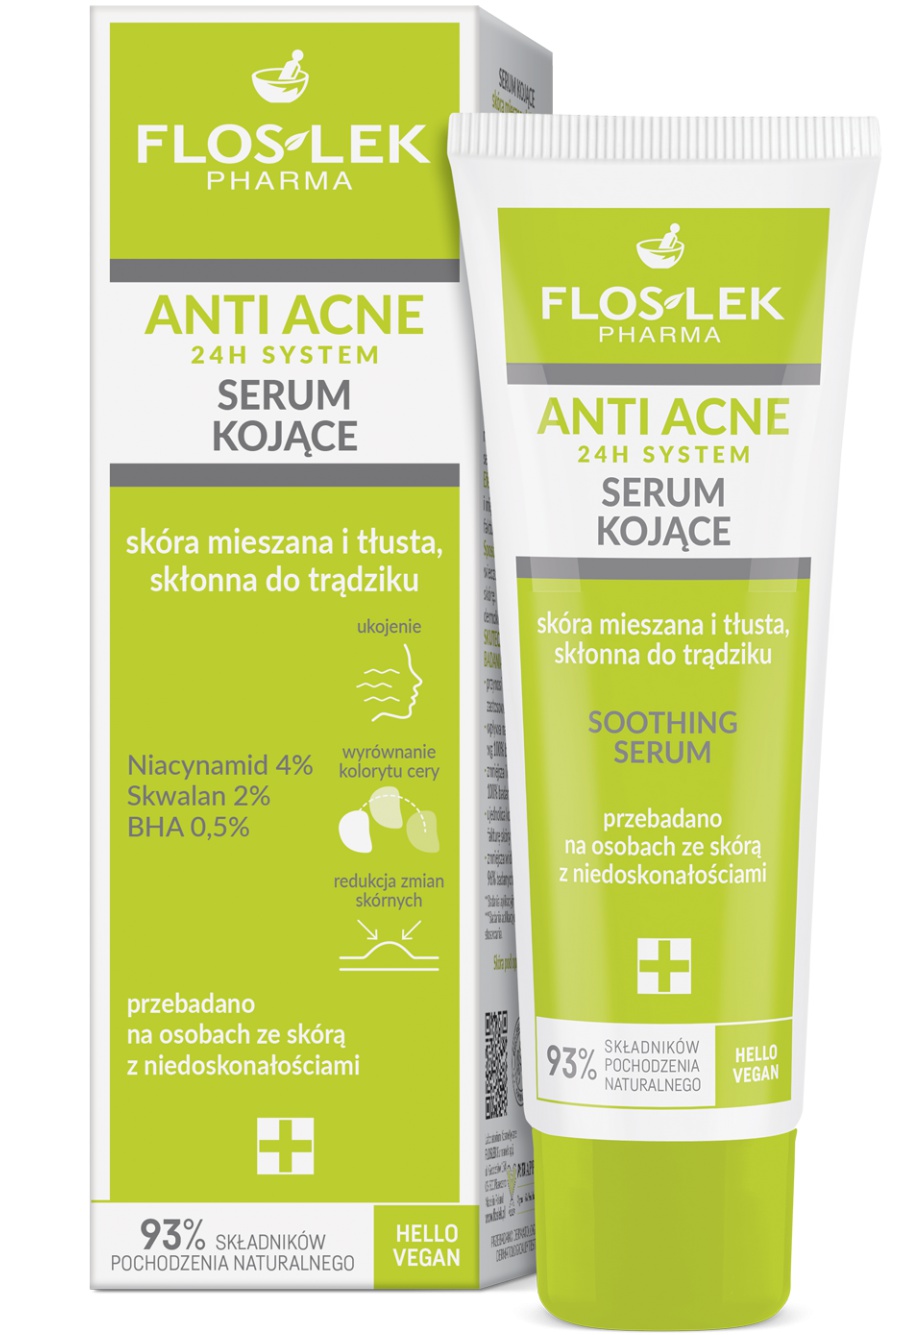 Floslek Anti Acne 24h System Soothing Serum ingredients (Explained)